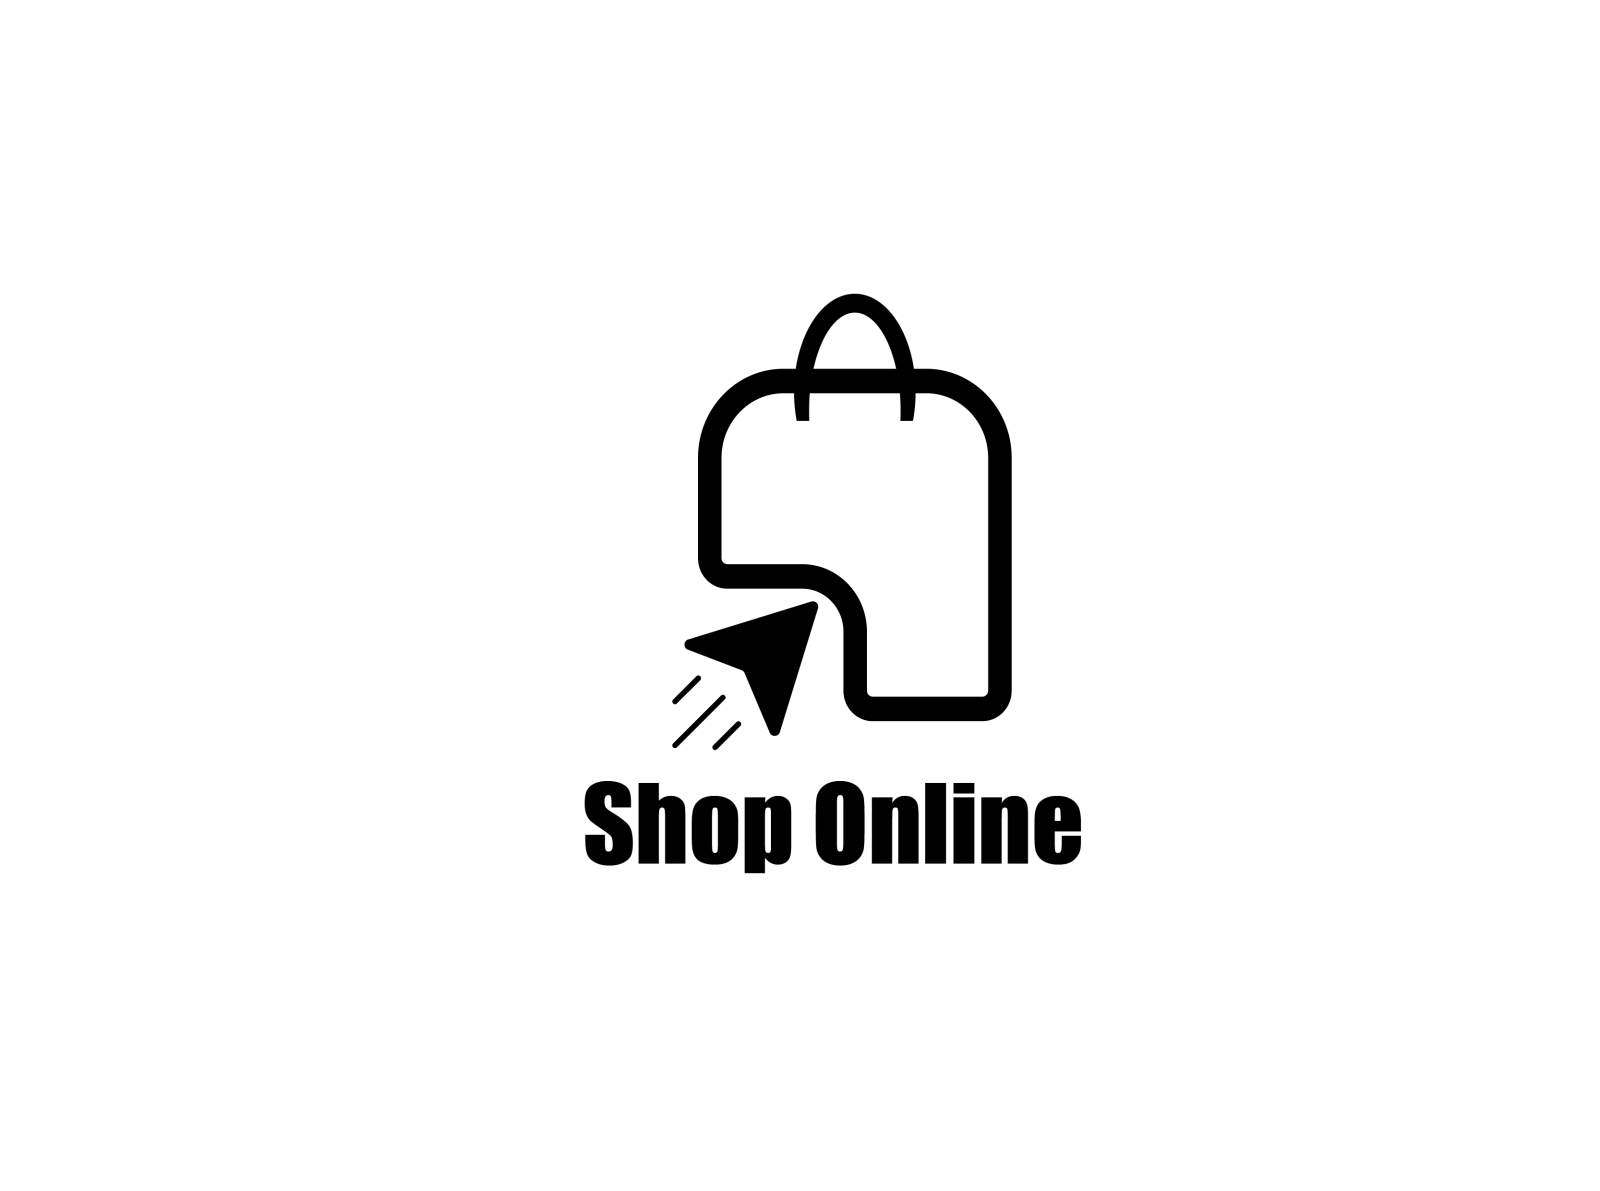 Mẫu thiết kế logo shop online độc đáo và chuyên nghiệp